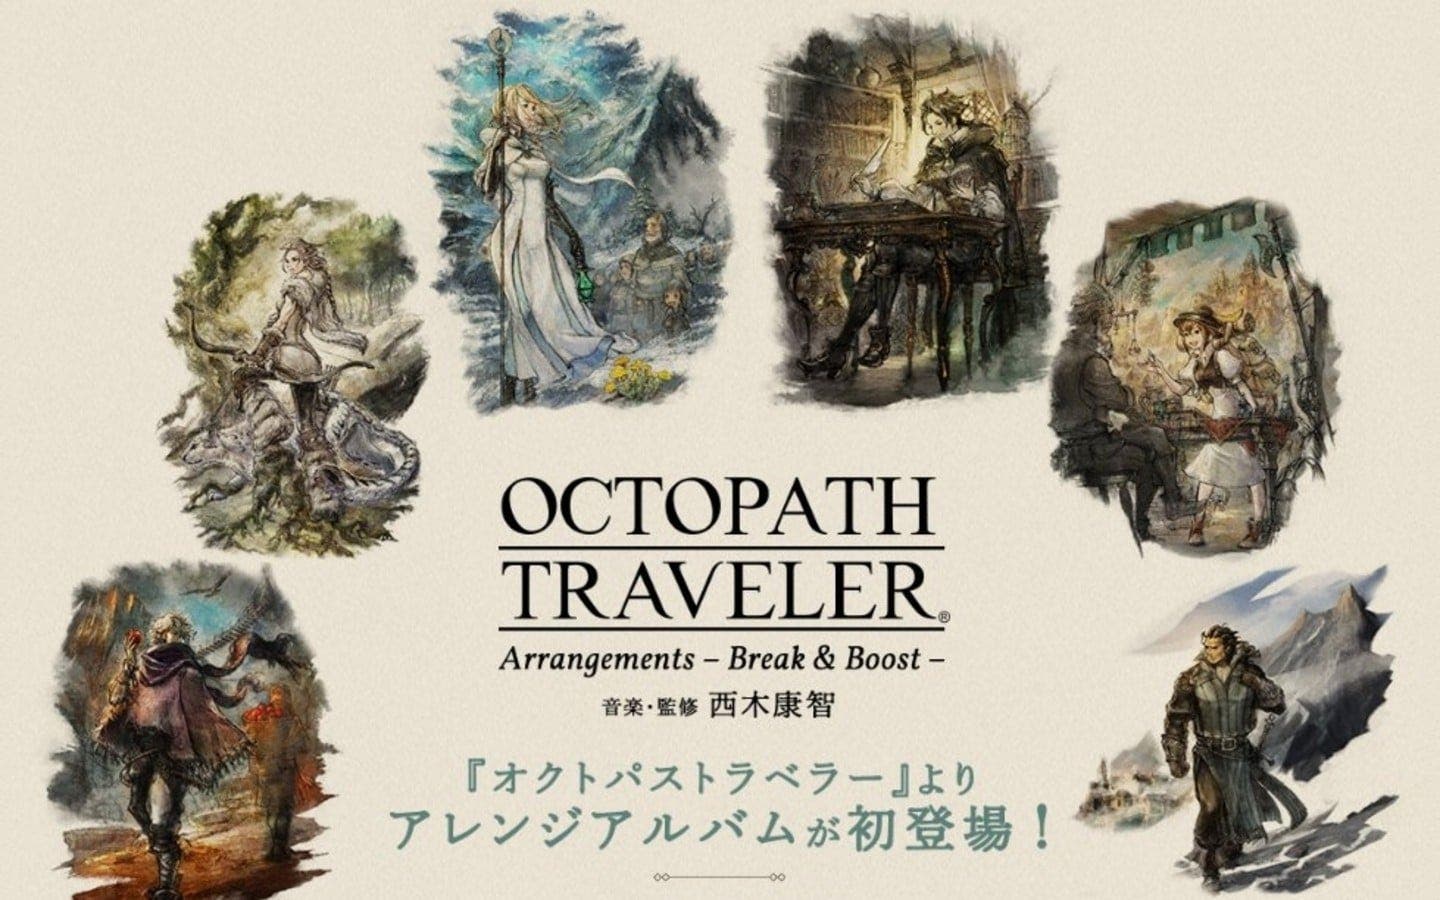 El álbum Octopath Traveler – Arrangements – Break & Boost saldrá a la venta el 20 de febrero en Japón